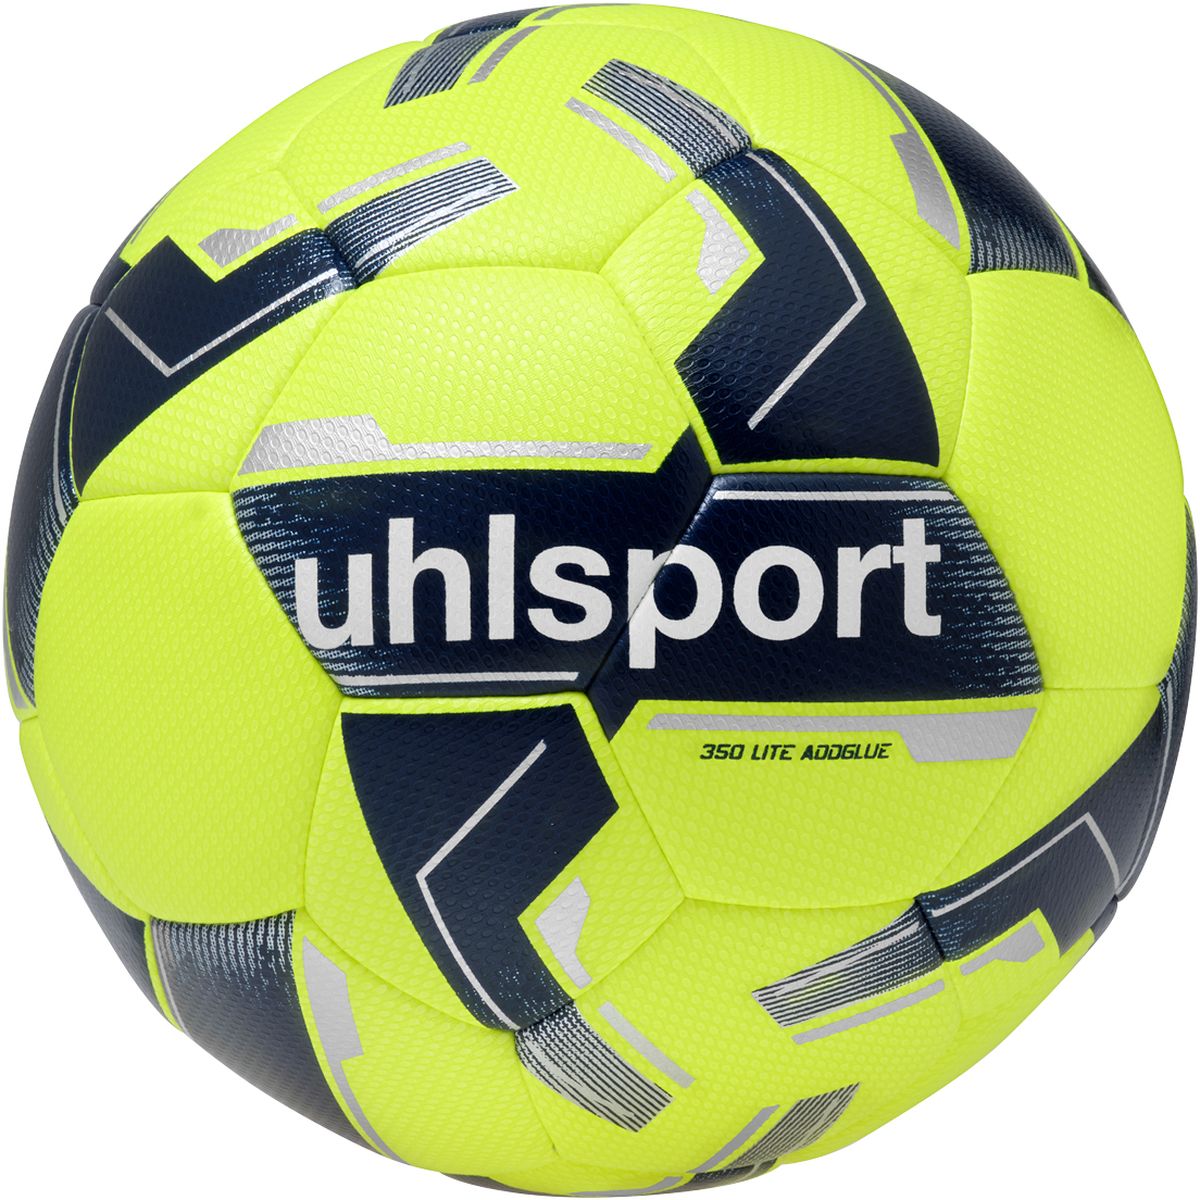 Uhlsport 350 Lite Addglue Outdoor-Fußball